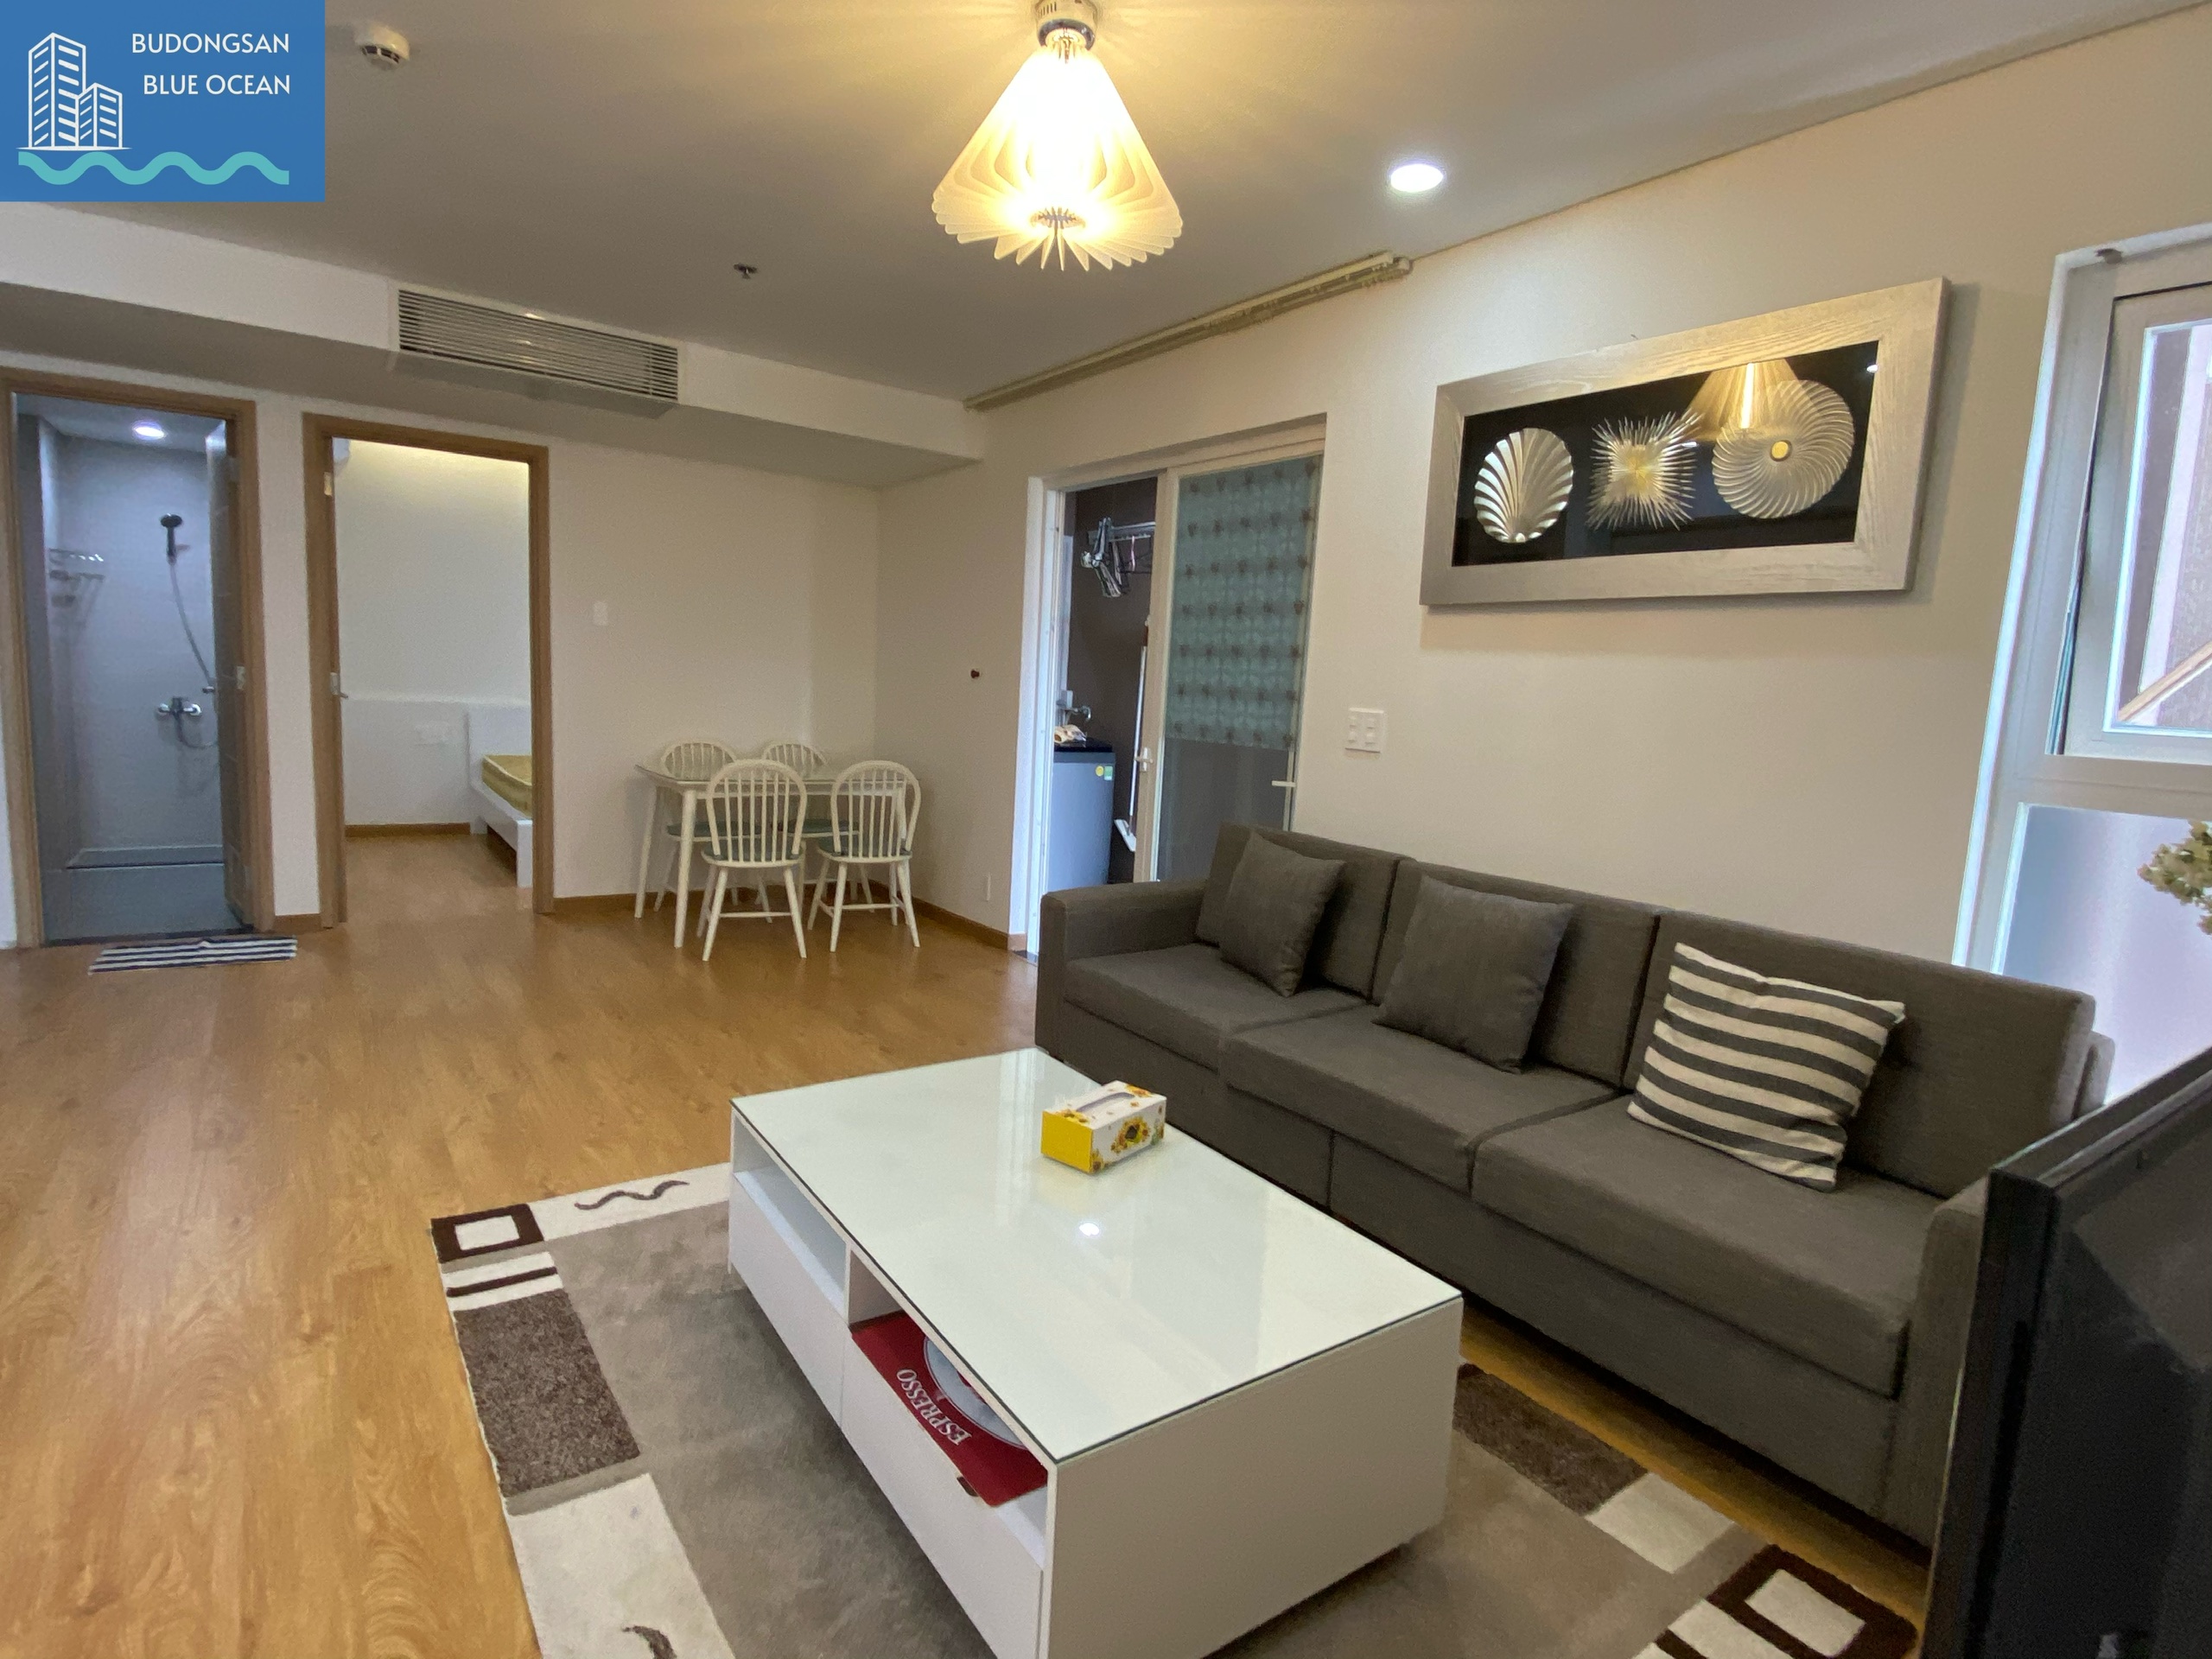 Cần bán gấp căn hộ Fhome 2PN cao cấp giá 2,55 tỷ, sổ hồng vĩnh viễn Budongsan Biển Xanh